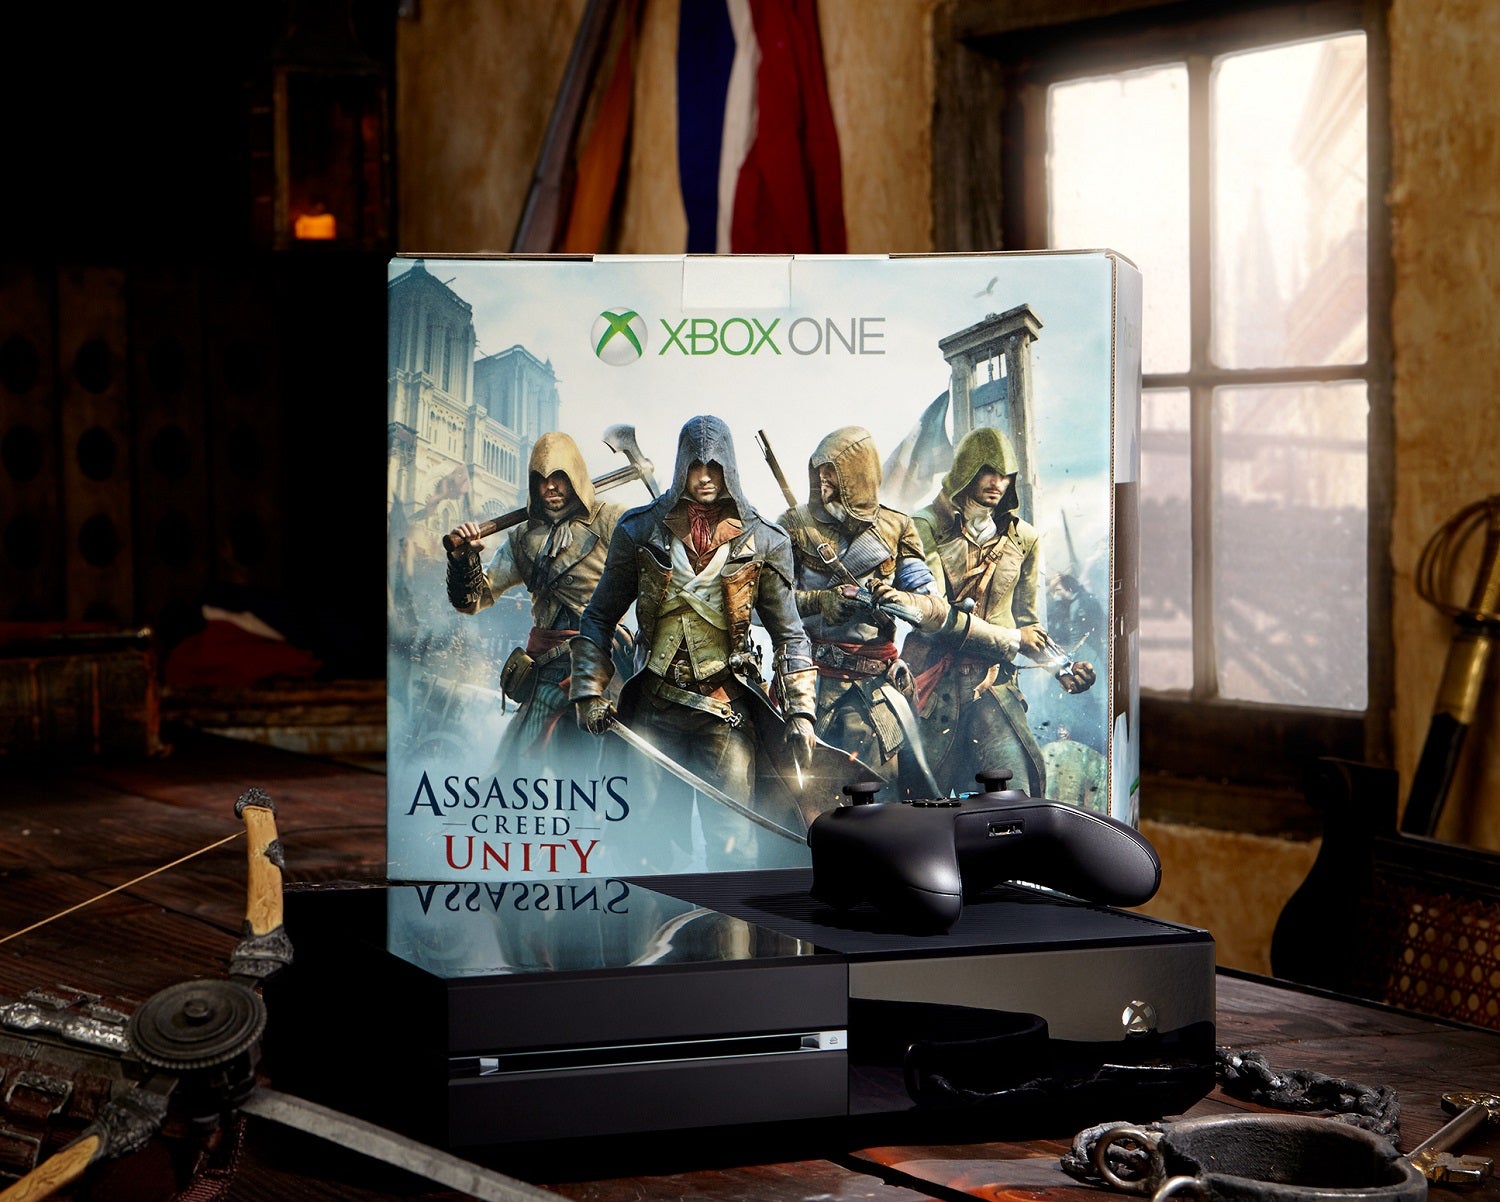 Obrazki dla Assassin's Creed Unity dostępne także w zestawie z konsolą Xbox One